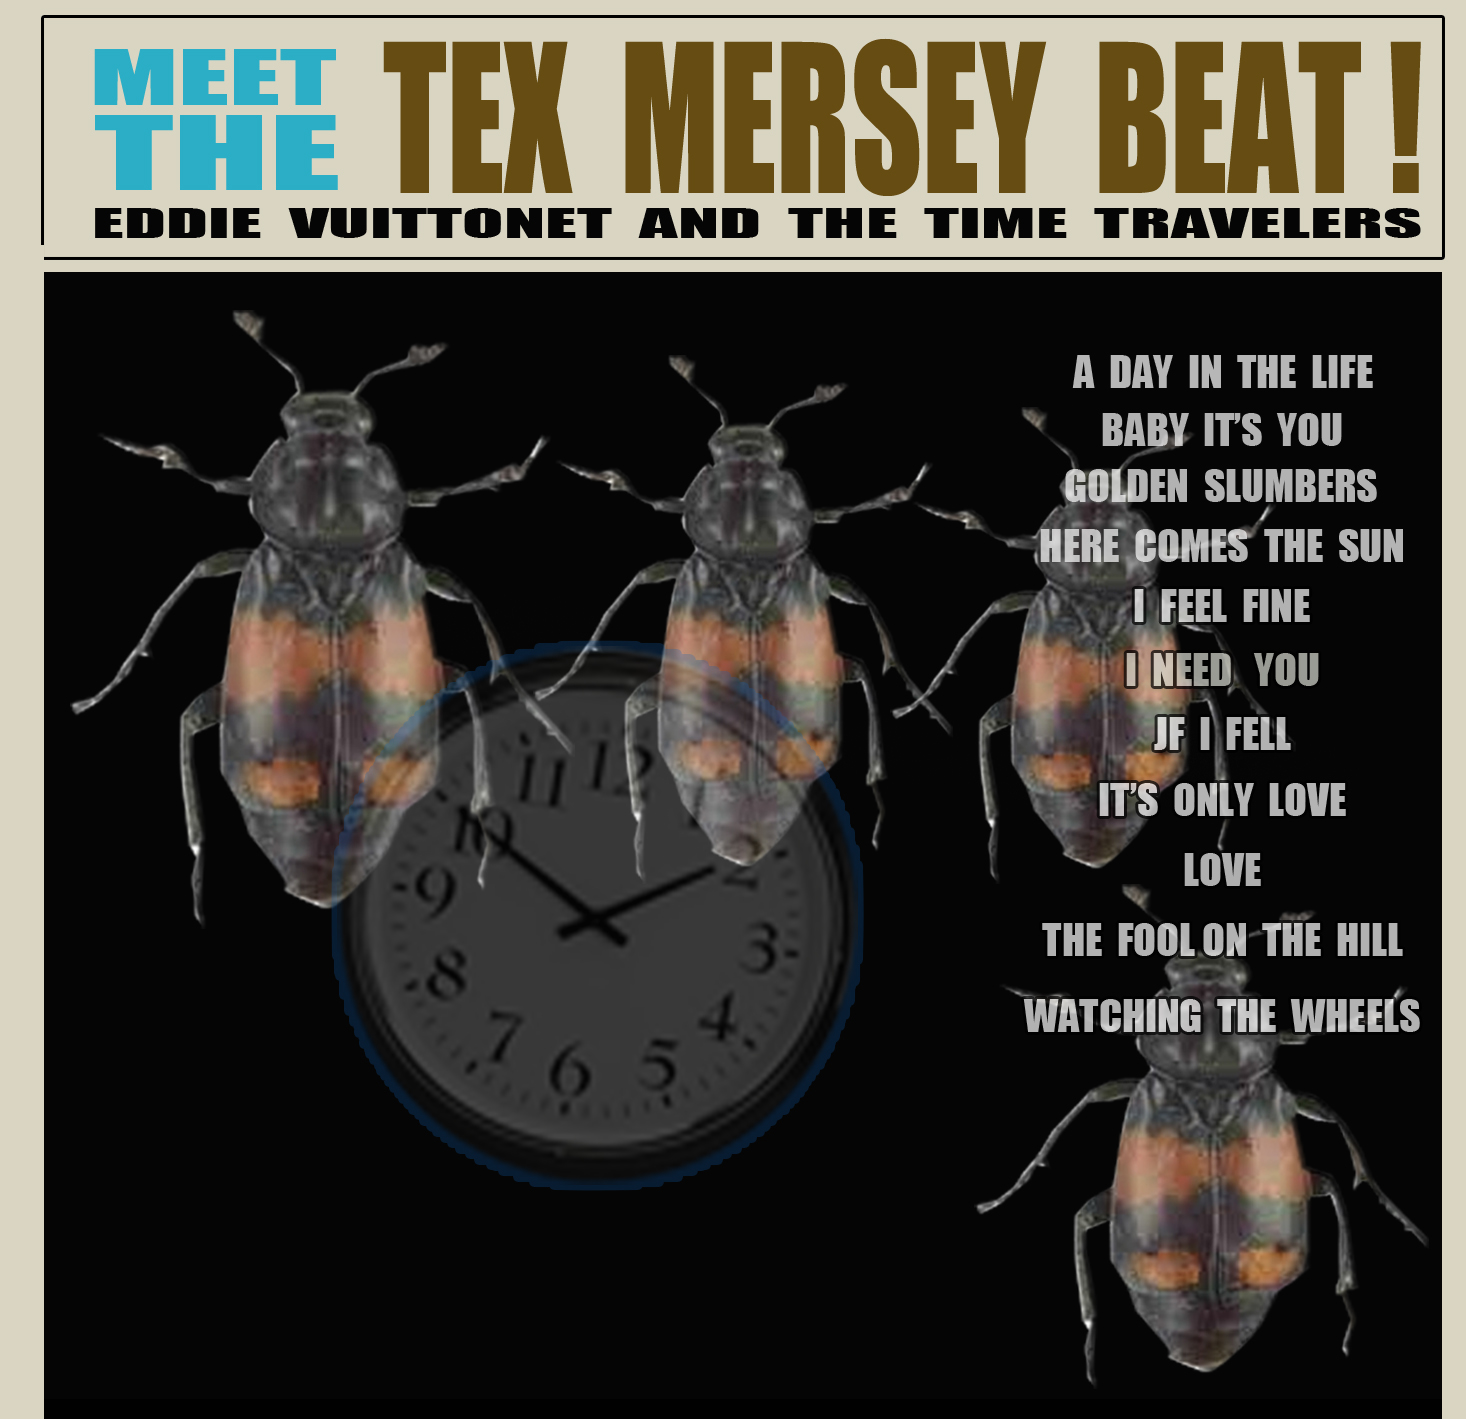 MEET THE TEXT MERSEY BEAT